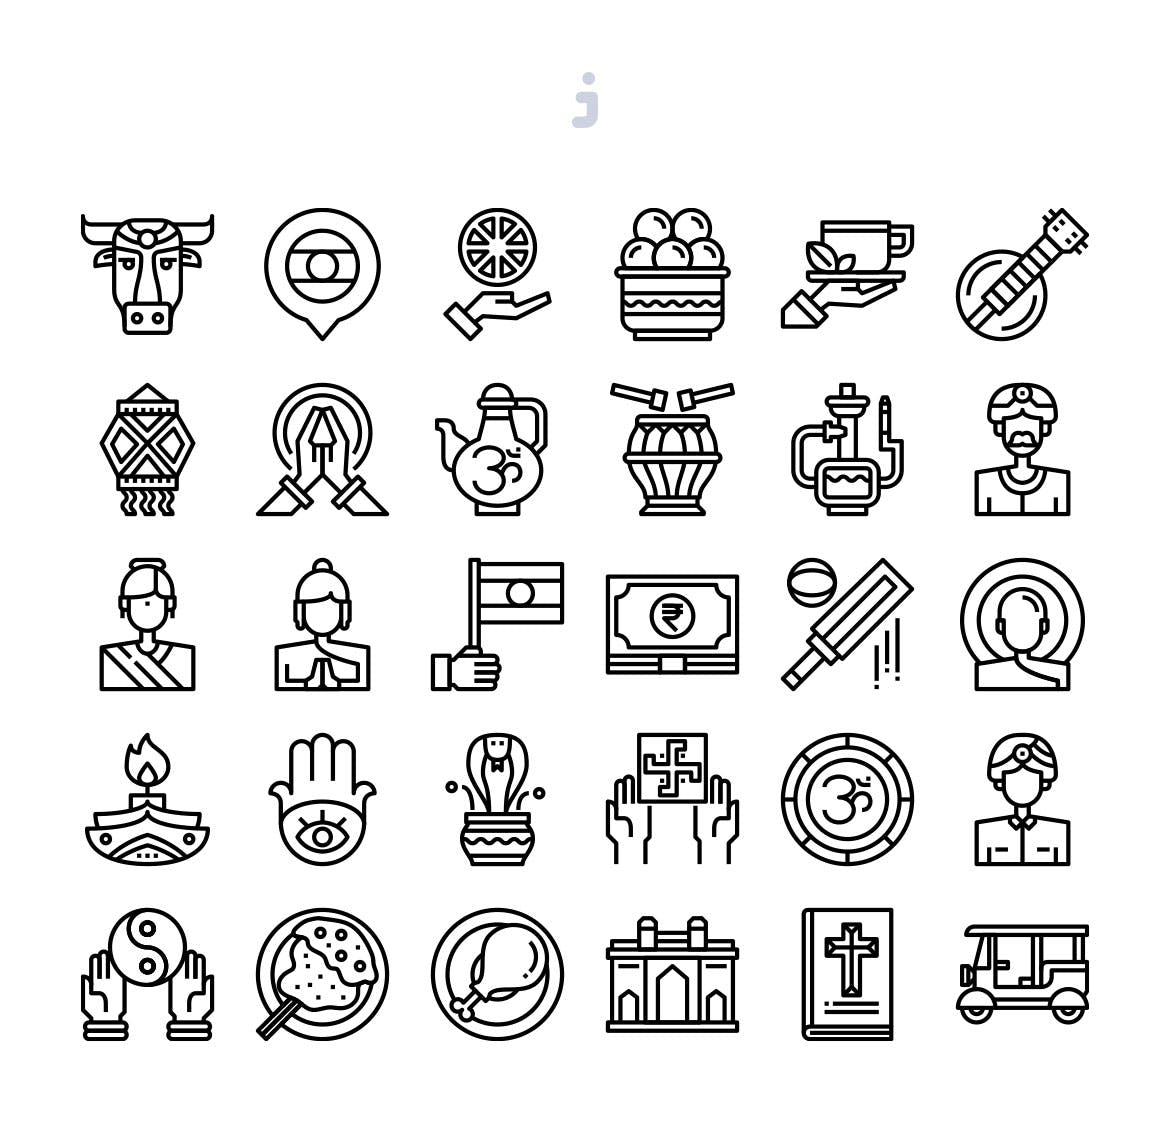 30枚印度国家民族元素彩色矢量图标 30 India Element Icons插图(2)